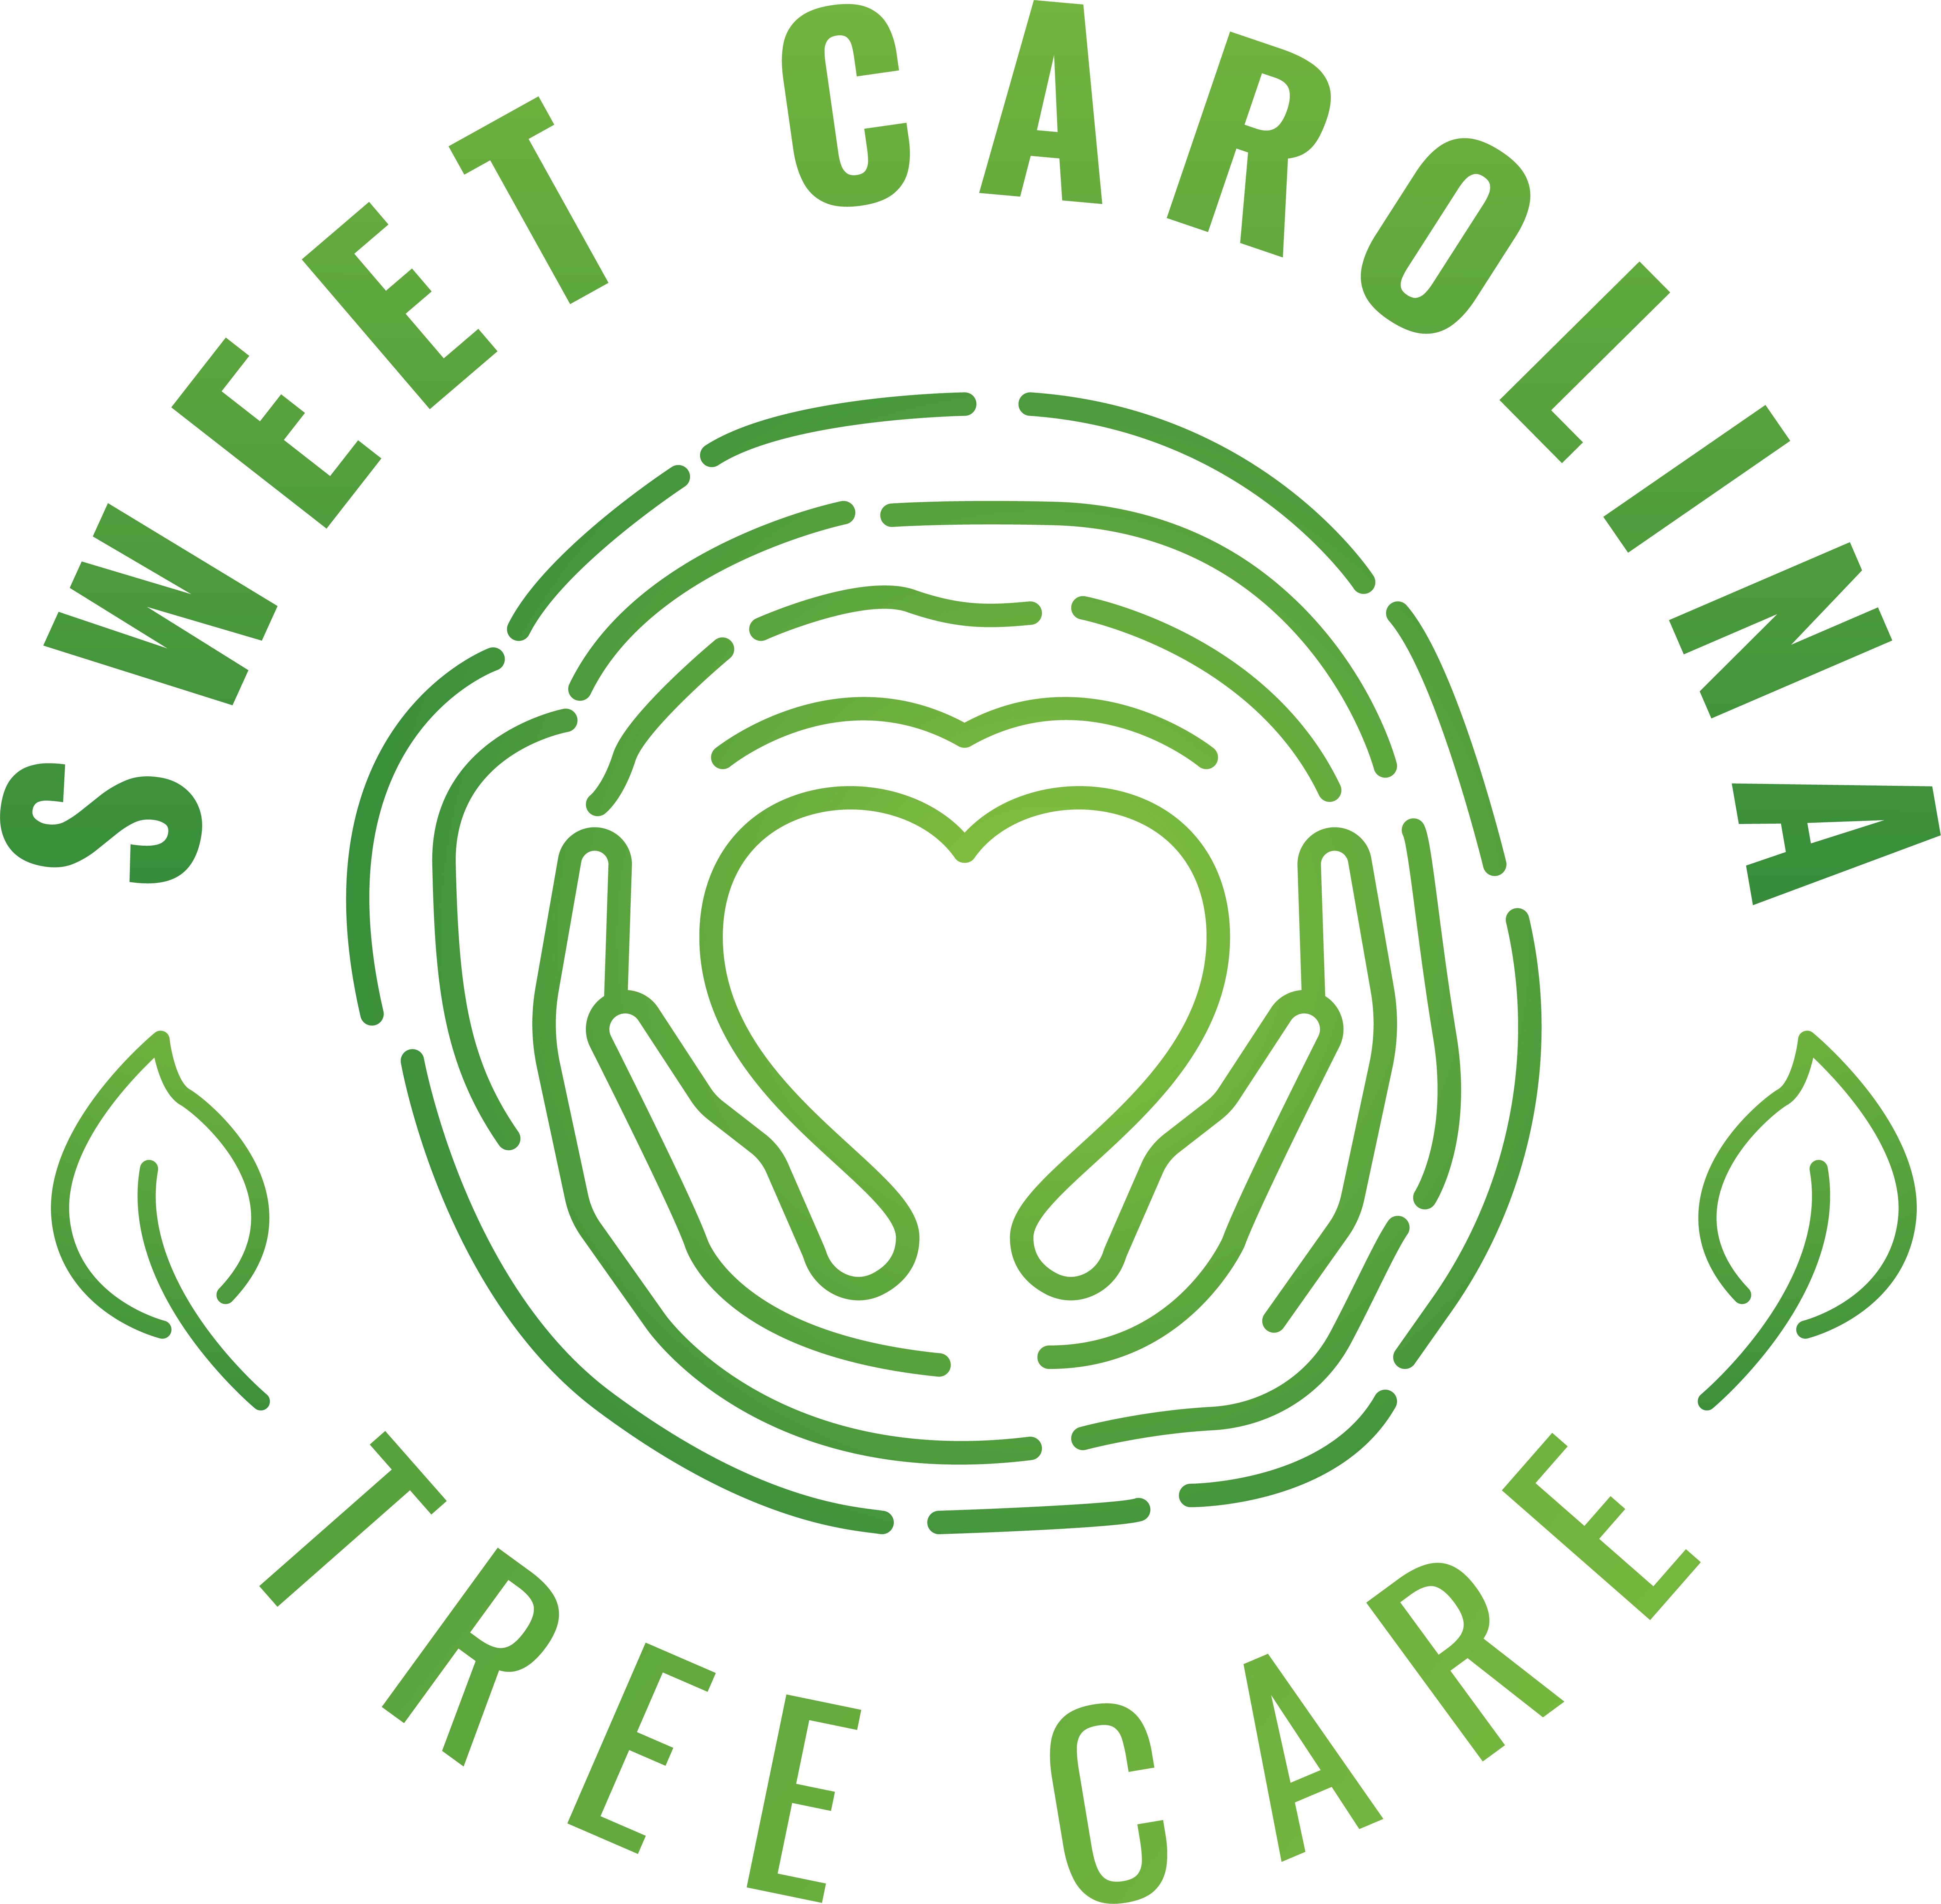 Sweet Carolina Tree Care Logo